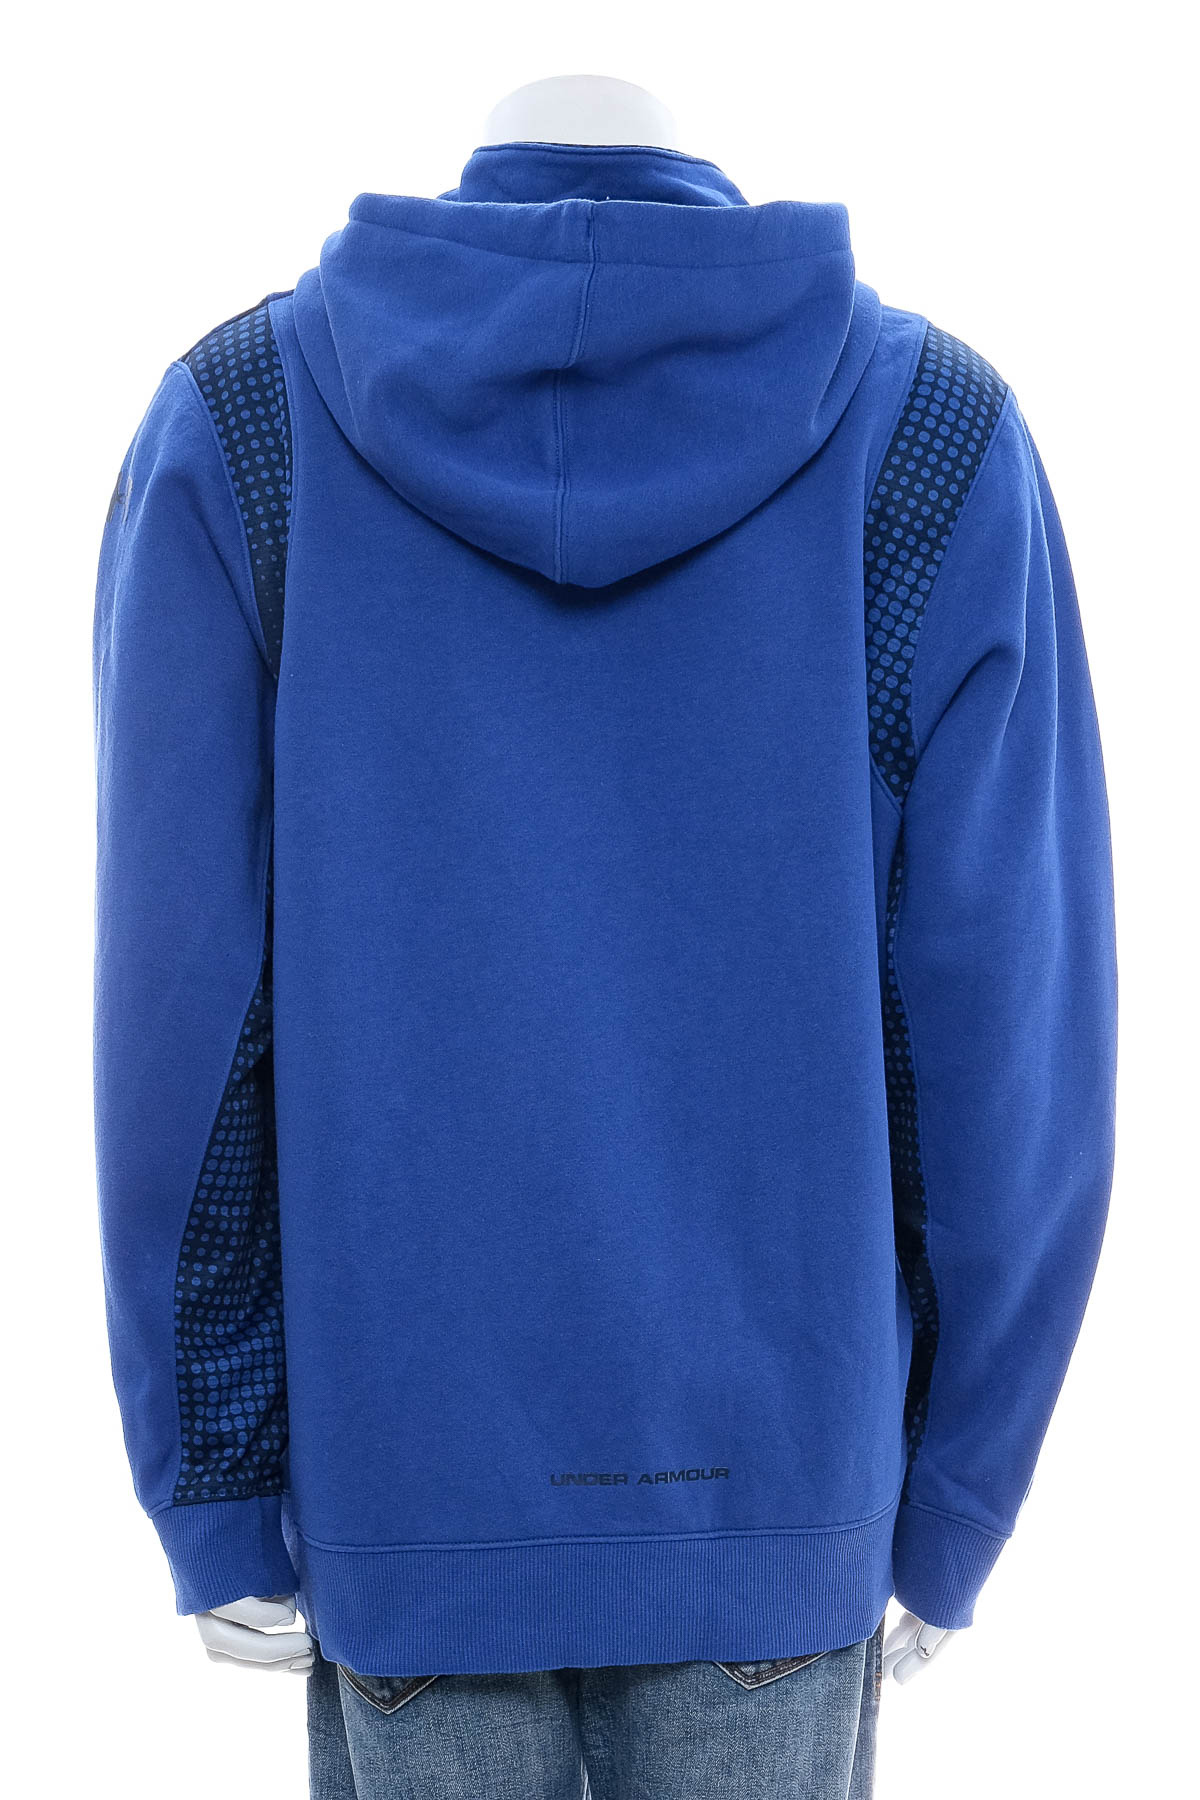 Men's sweatshirt - UNDER ARMOUR - 1